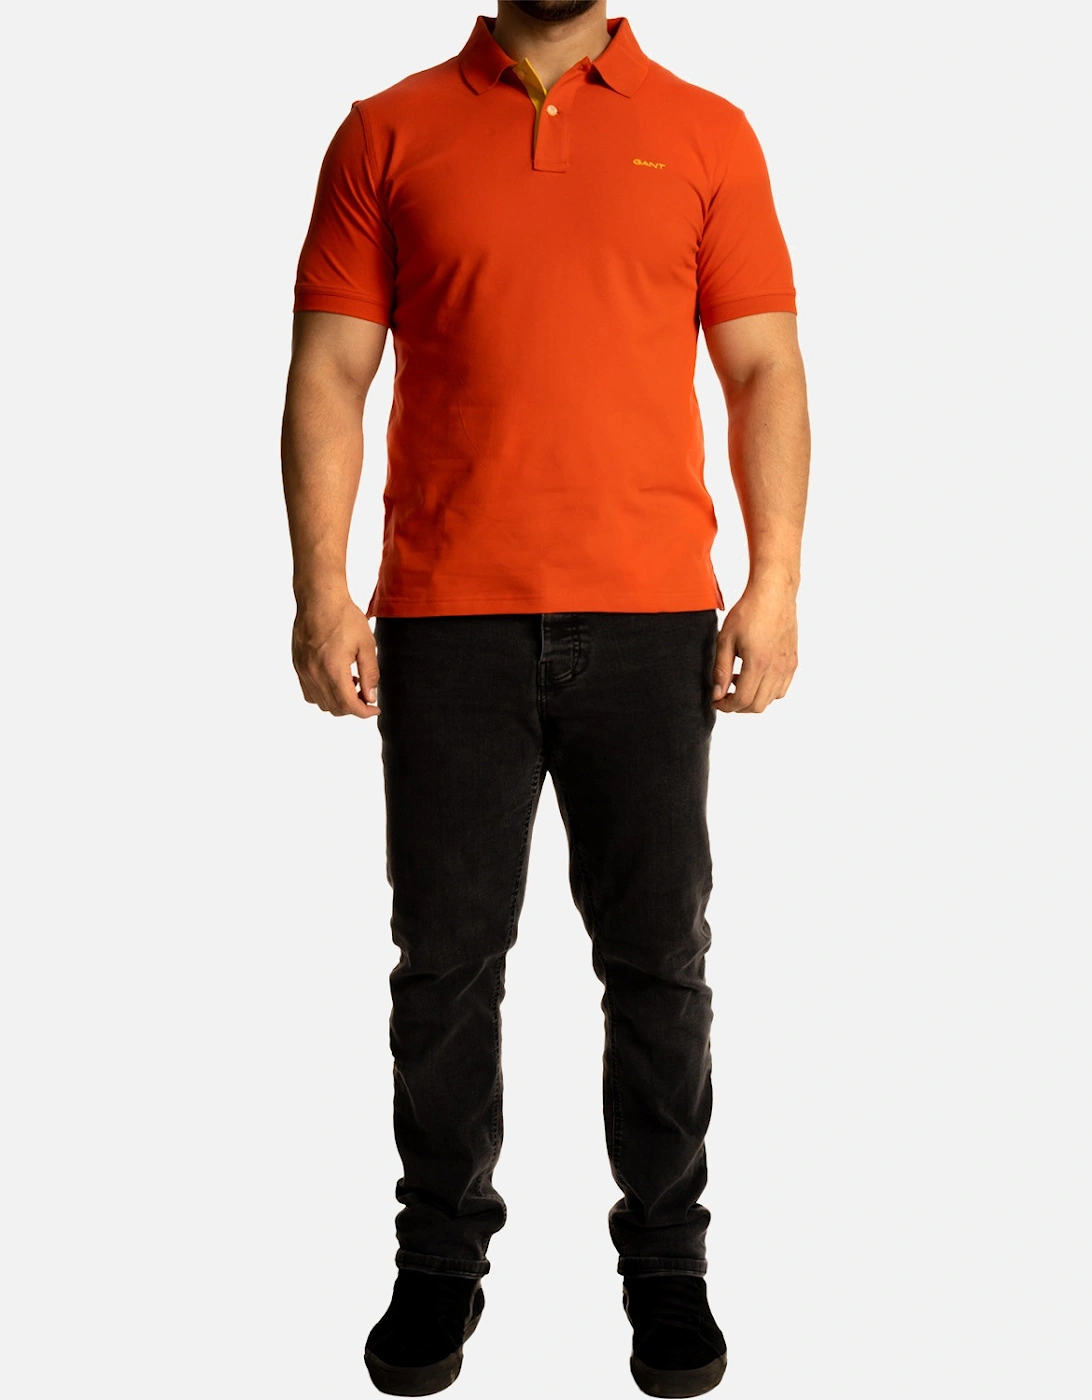 Mens Contrast Pique S/S Polo Shirt (Orange)